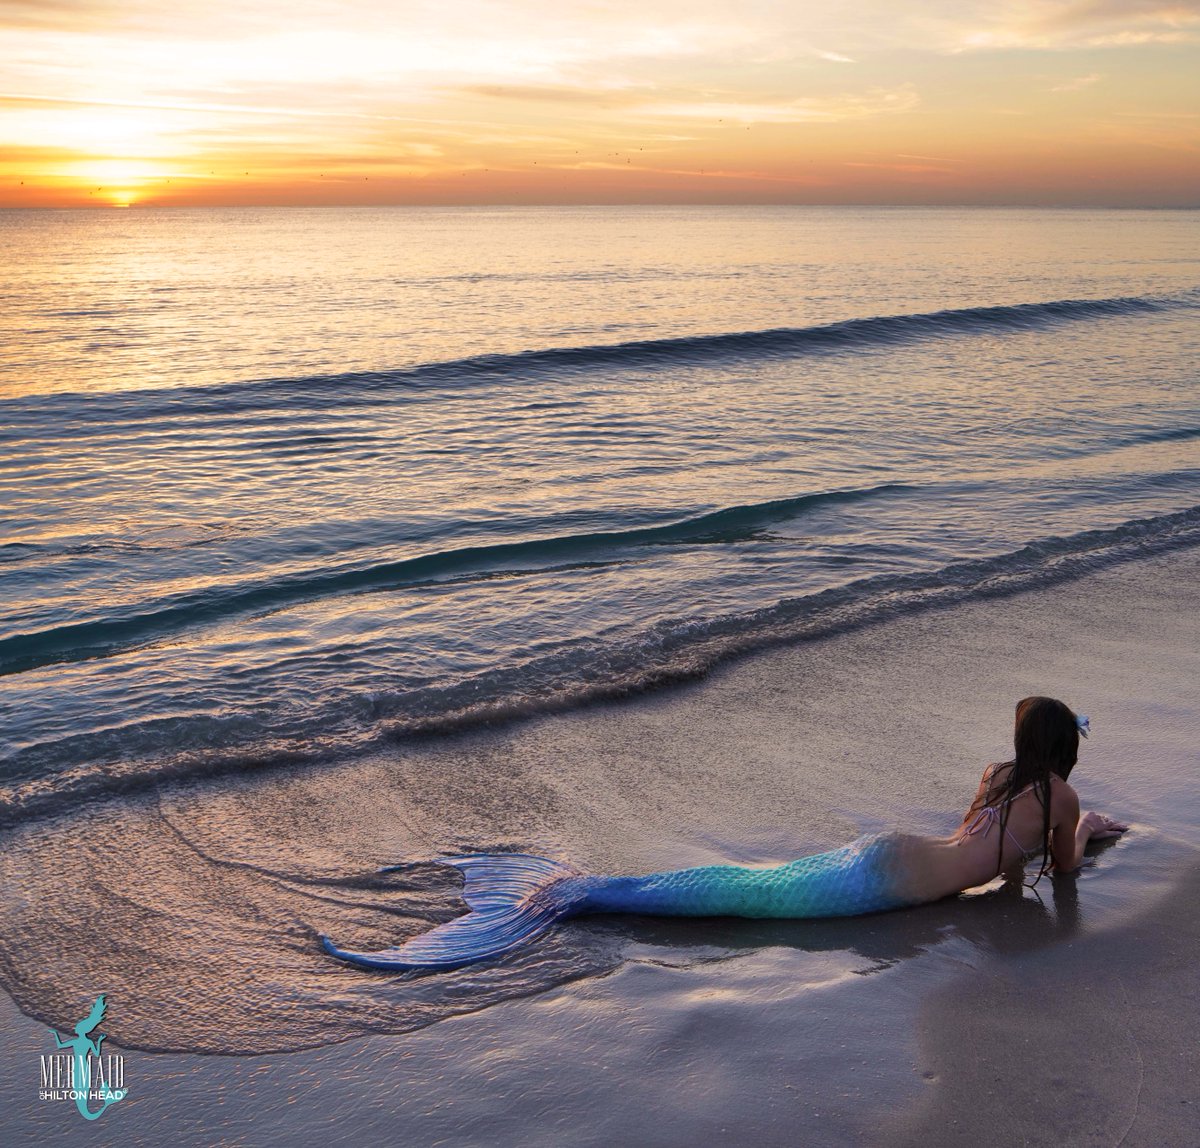 #MermaidMonday is always better when it begins with a sunrise!

 #mermaidofhiltonhead #mermaid #mermaidnina #hhimermaid #Hiltonheadmermaid #mermaids #sunrise #realmermaid #siren